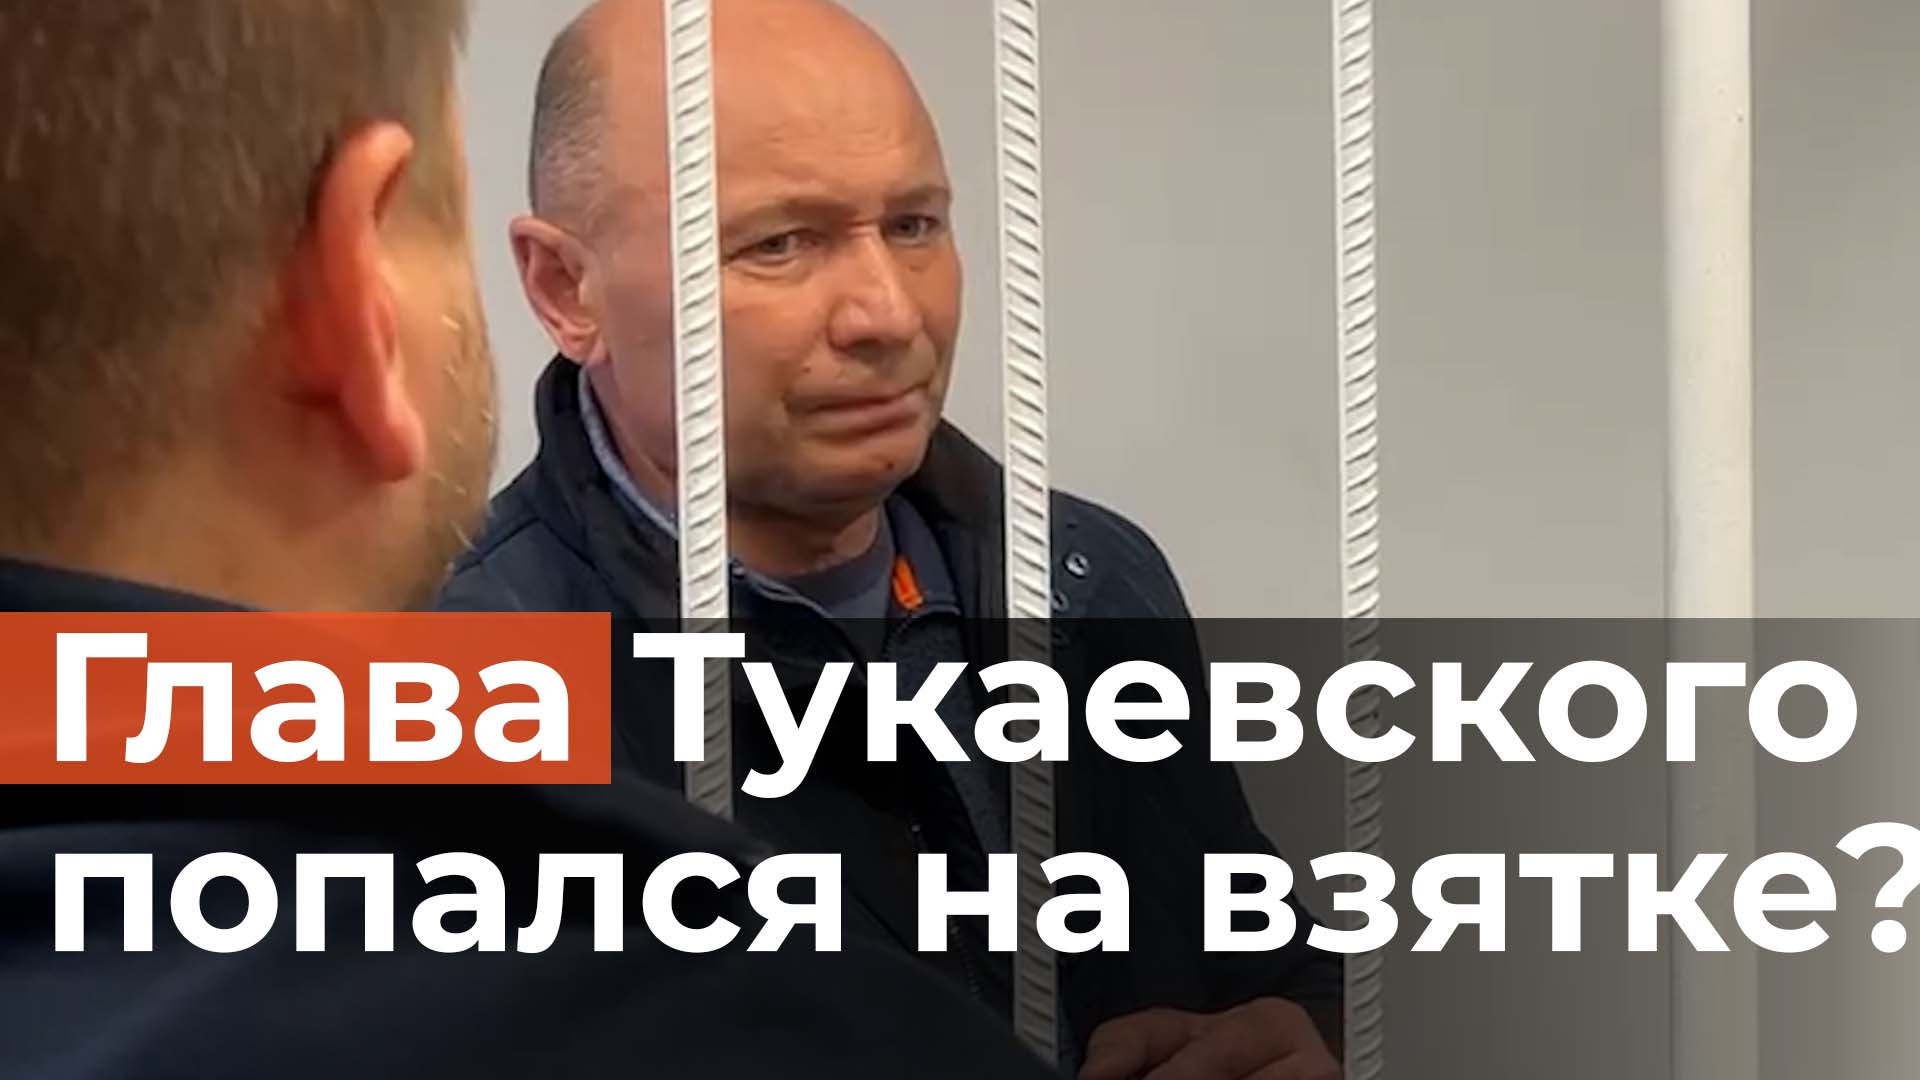 Арестован глава Тукаевского района Фаил Камаев. Его подозревают во взятке на 1,3 млн рублей